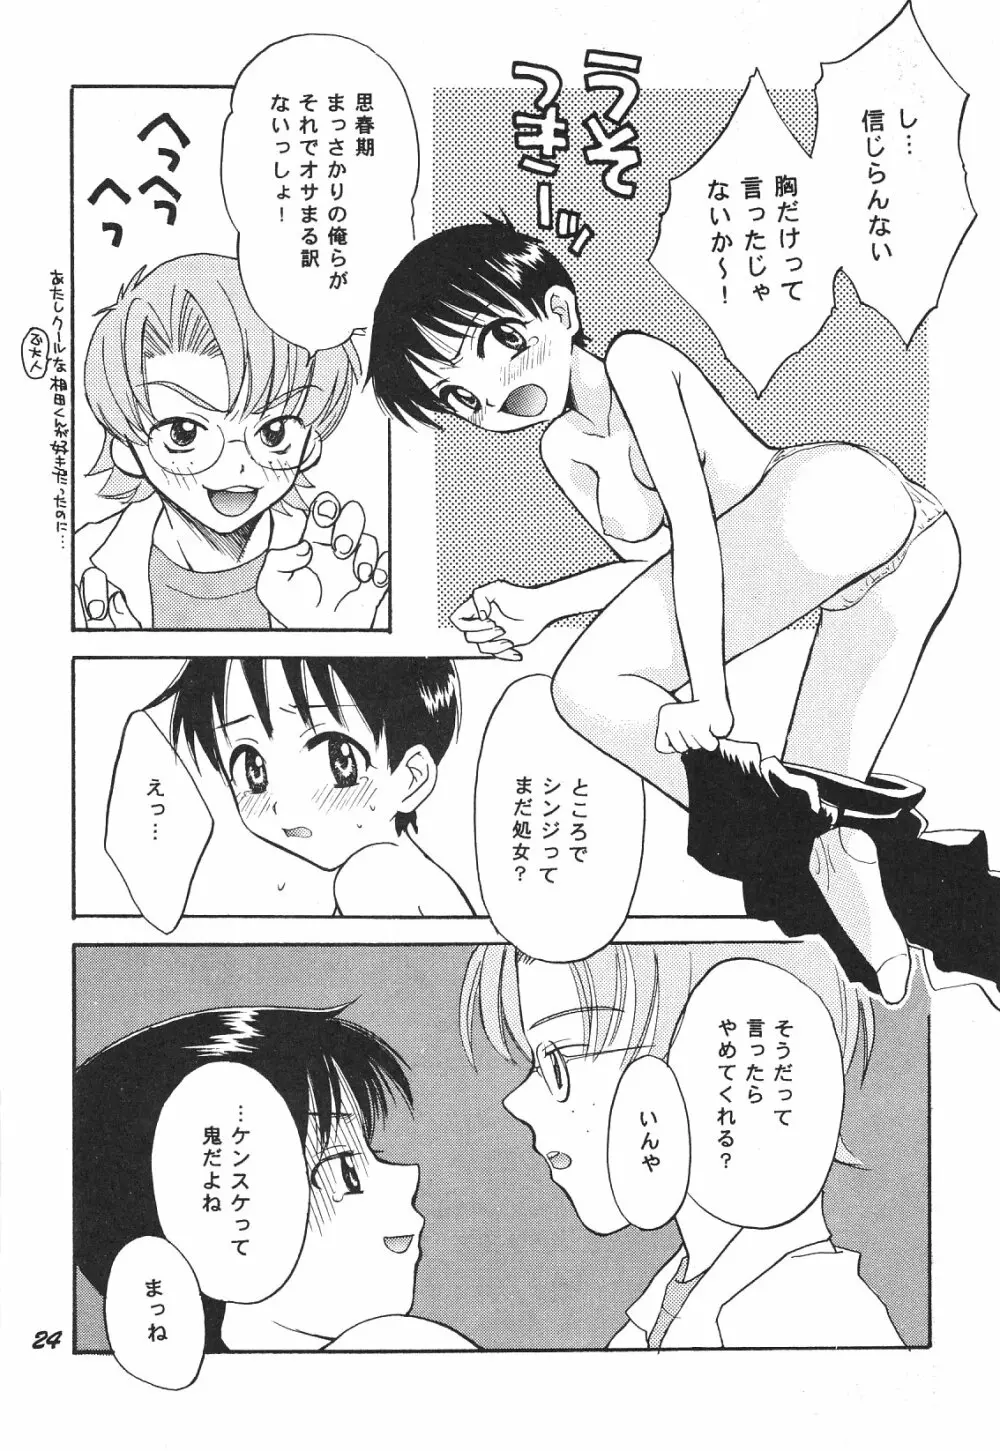 Maniac Juice 女シンジ再録集 ’96-’99 24ページ